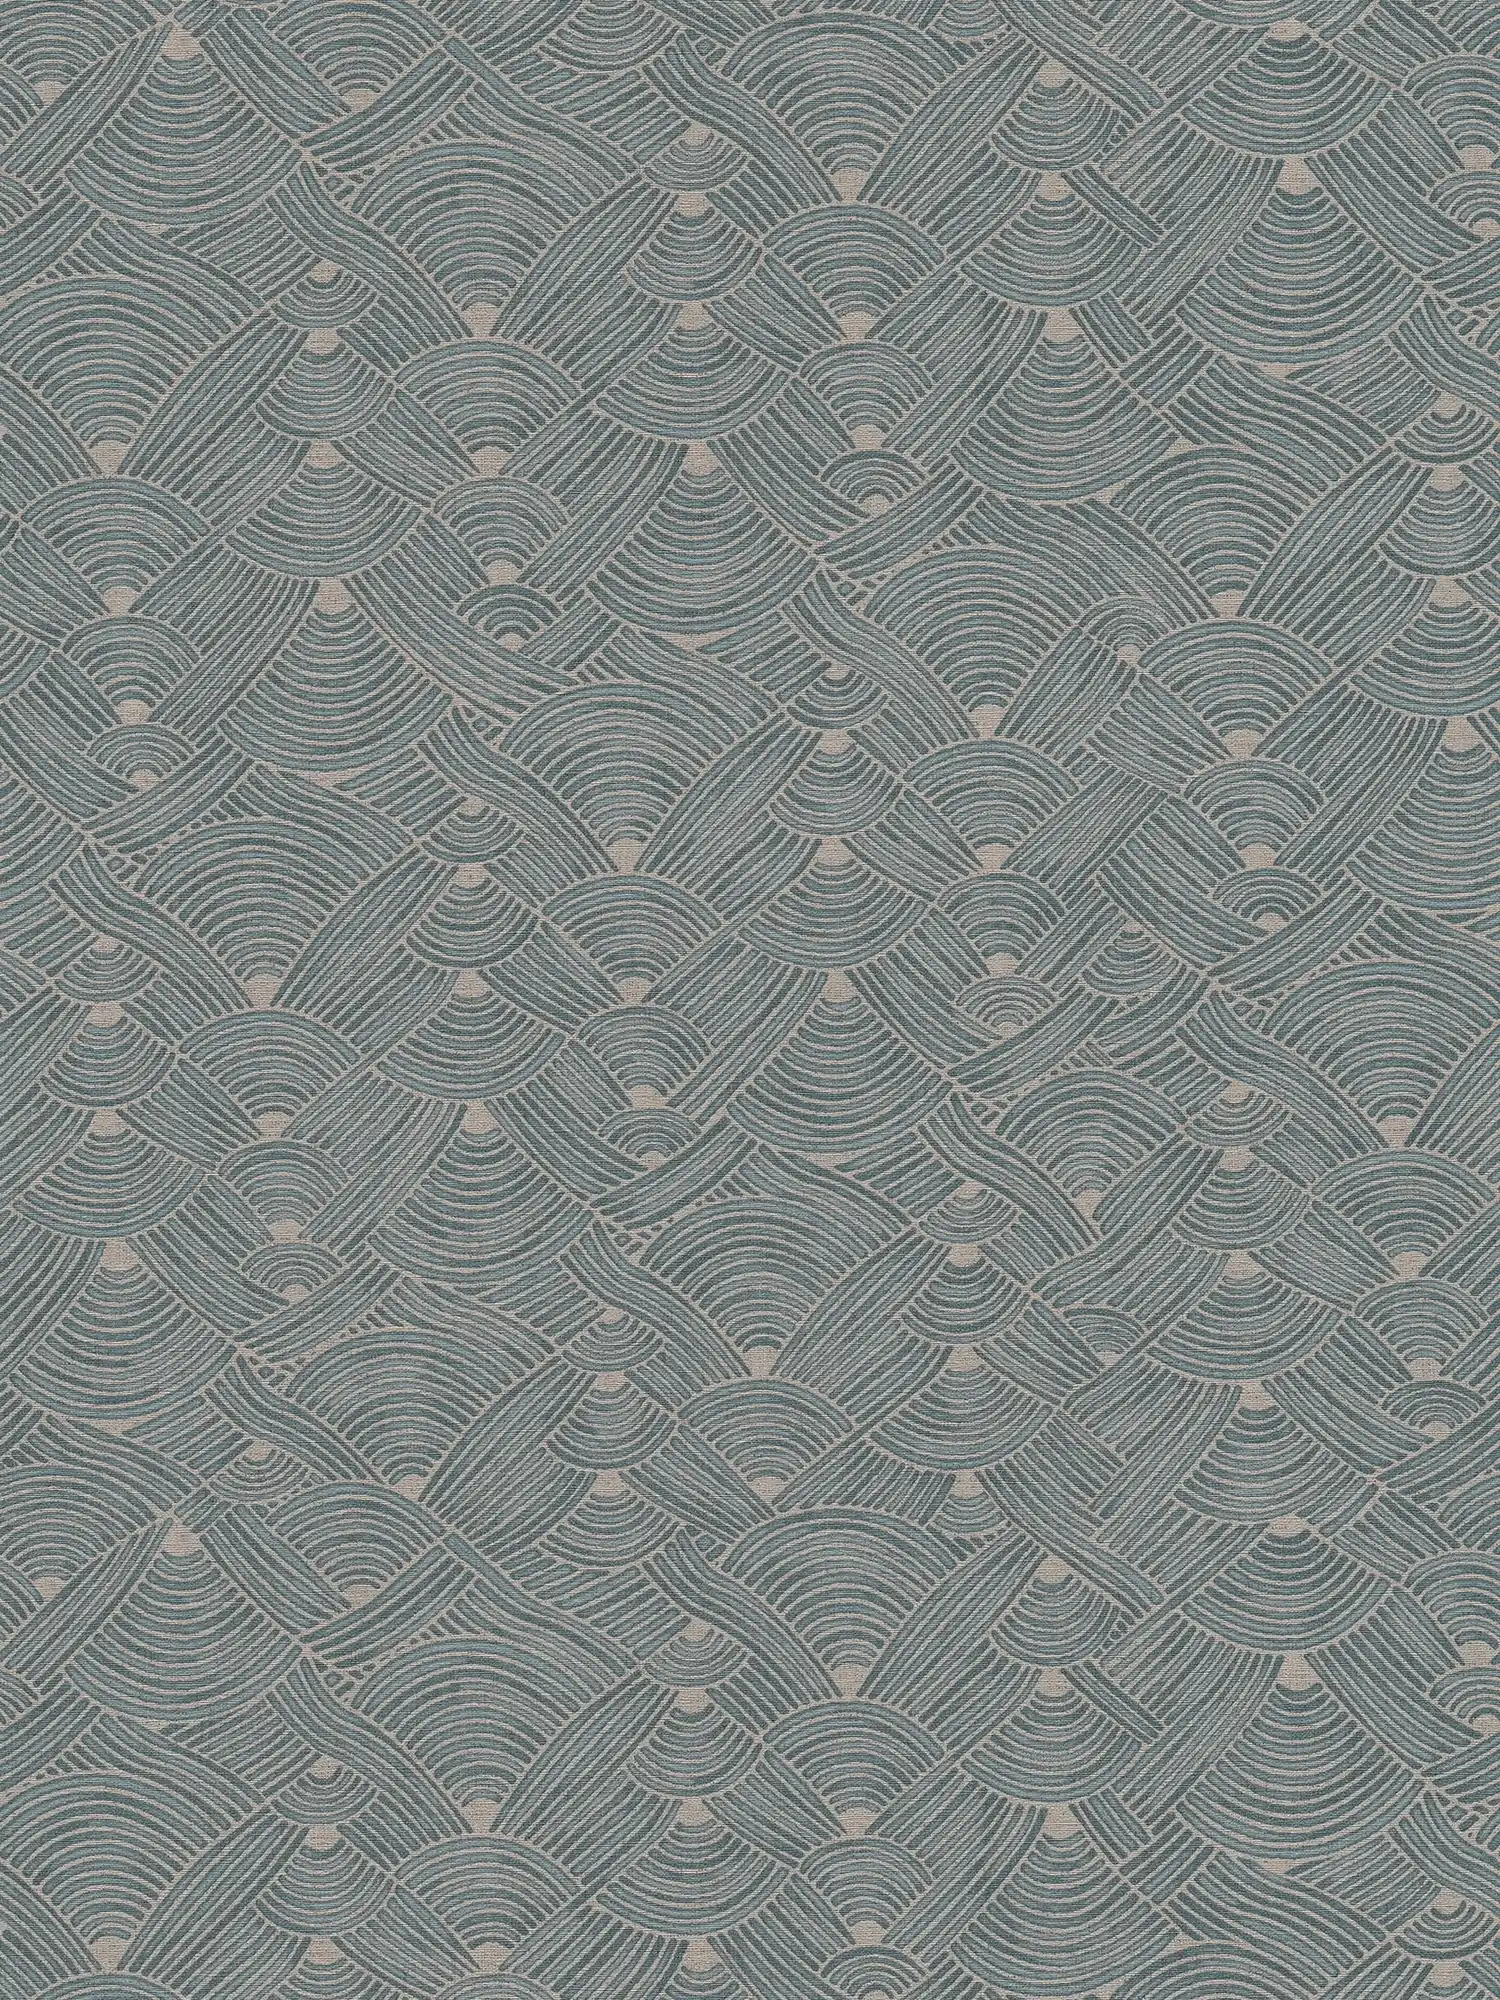 Papel pintado no tejido de diseño étnico con aspecto de cesta - azul, gris, beige
